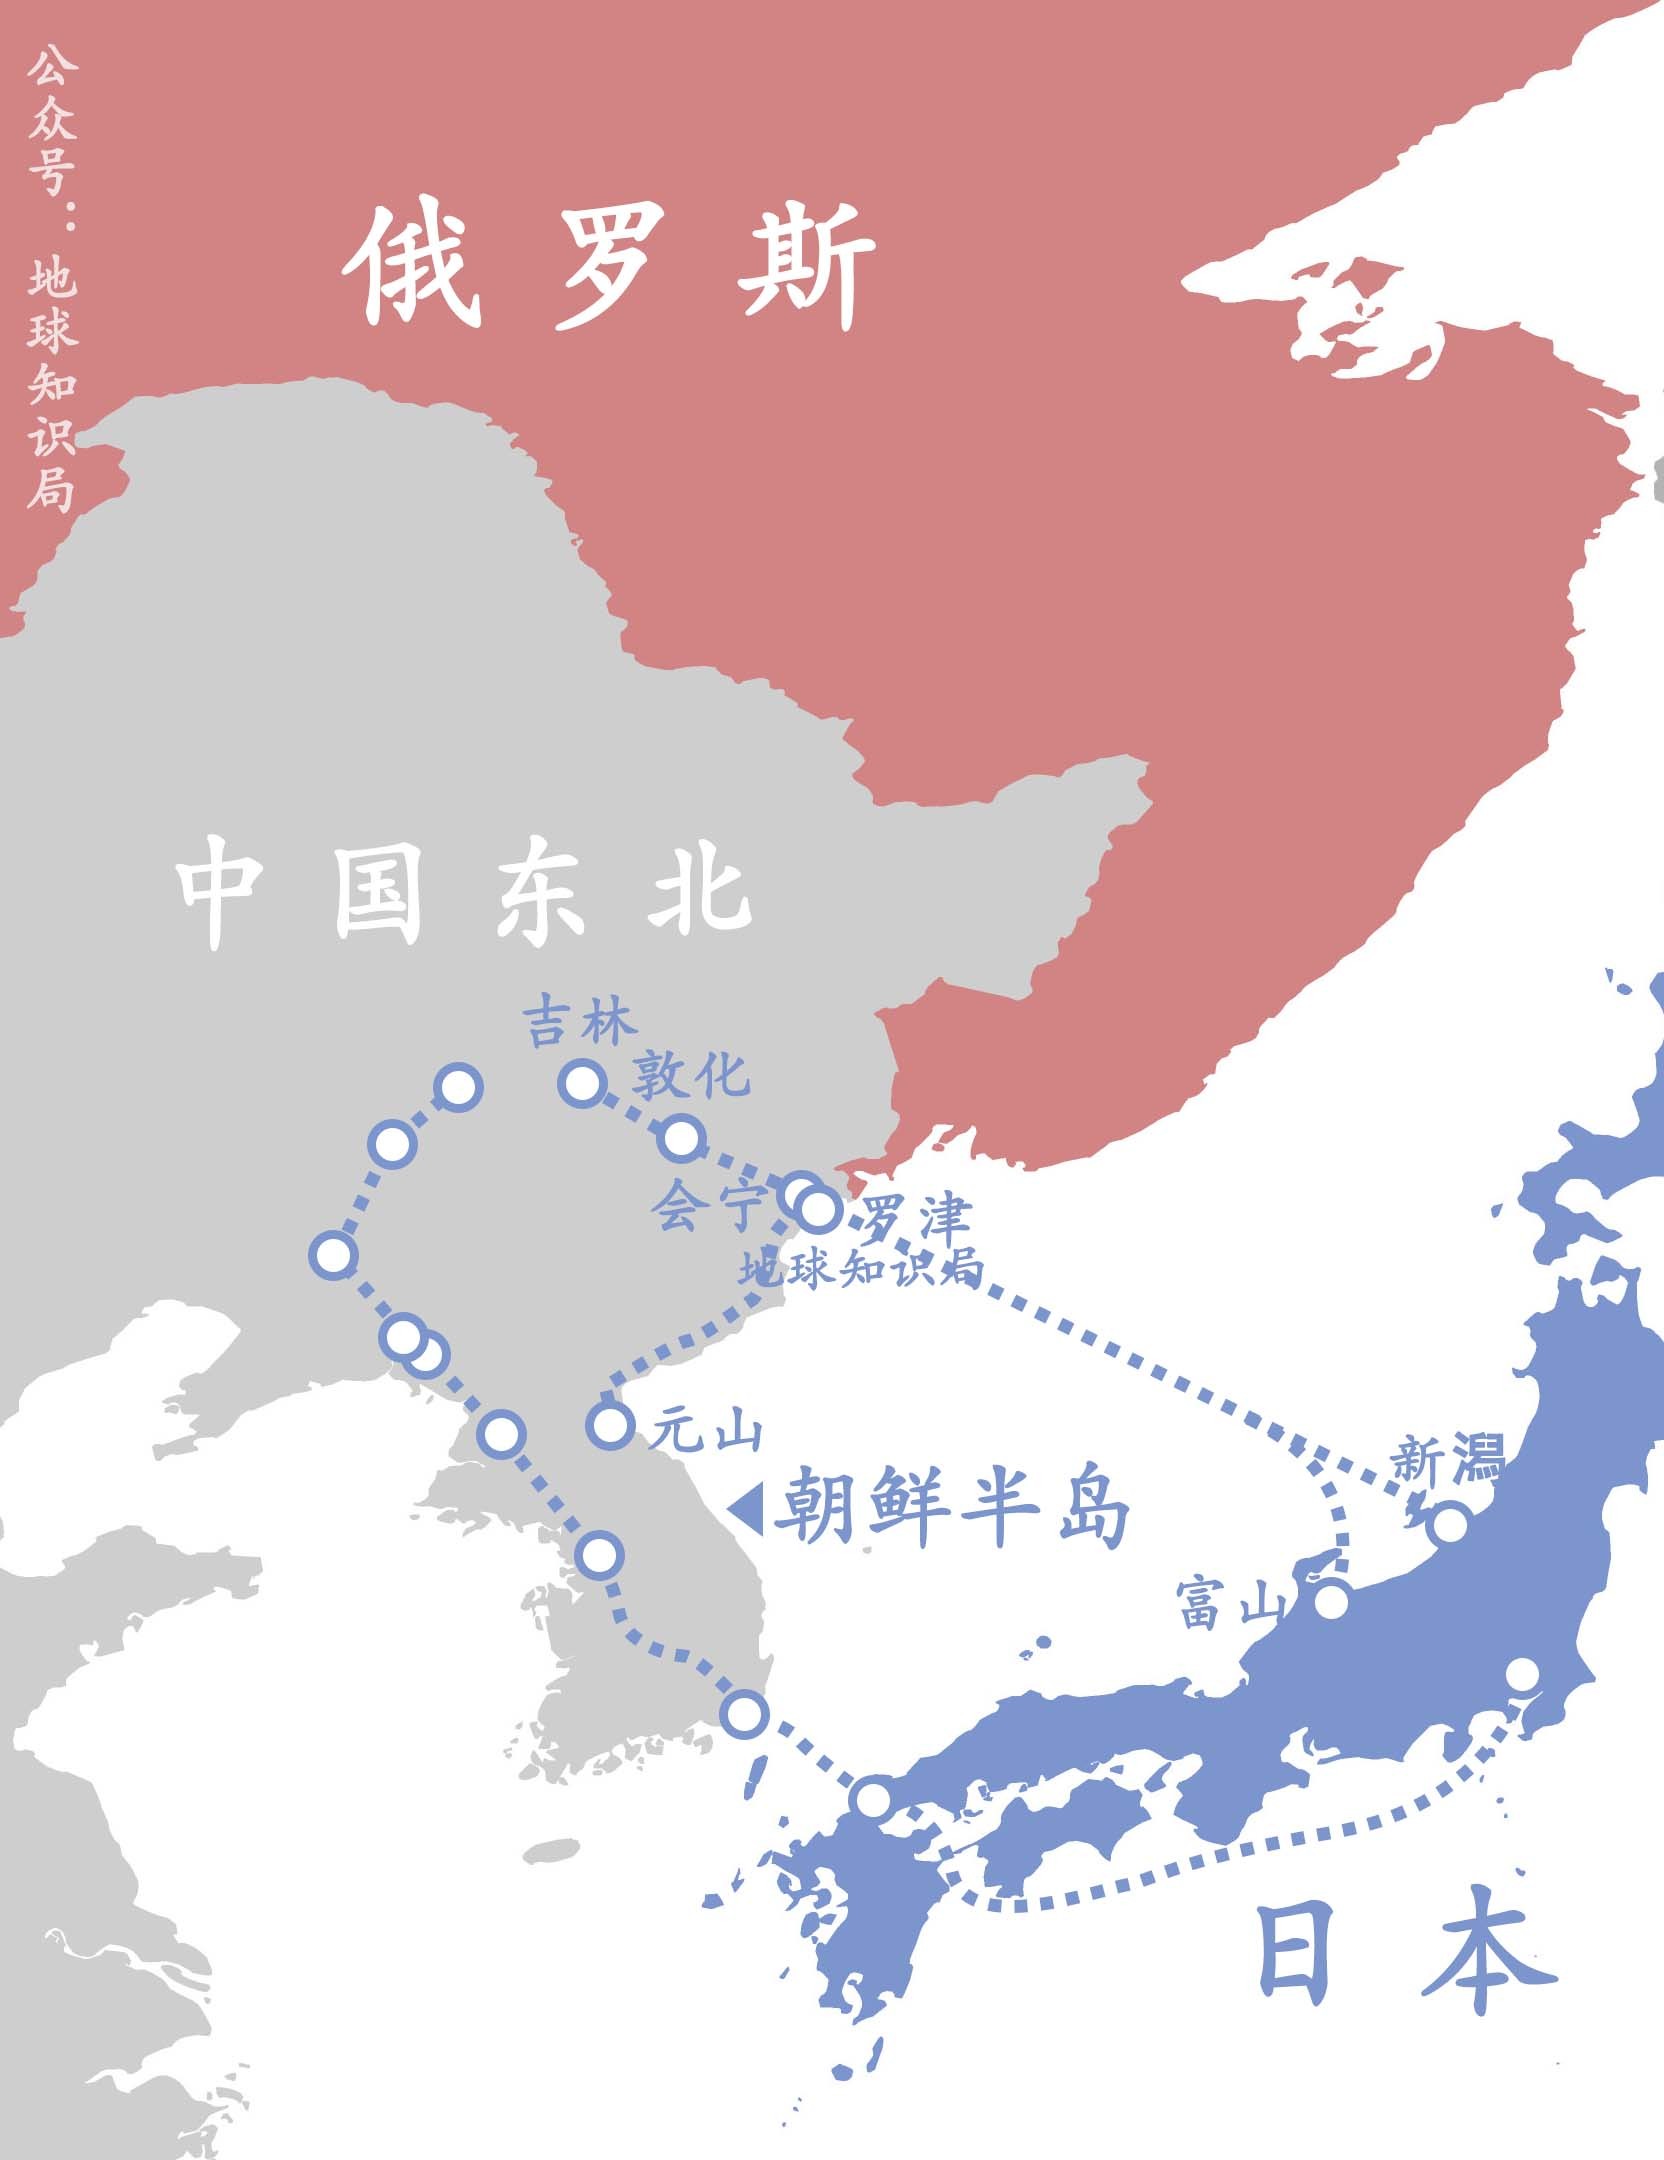 朝鲜与中国哪个省接壤图片